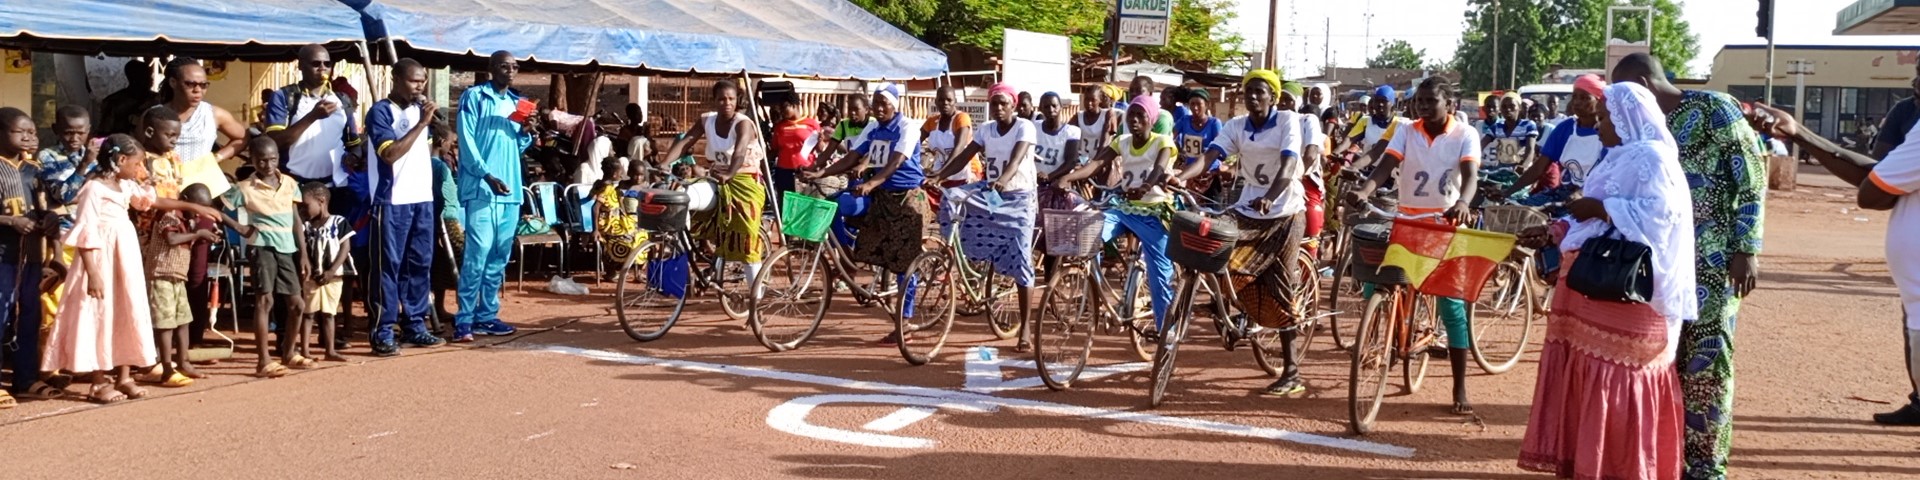 Binnenvertriebene und Frauen der Aufnahmegemeinde stehen bei einem Fahrradwettbewerb an einer Startlinie. © GIZ